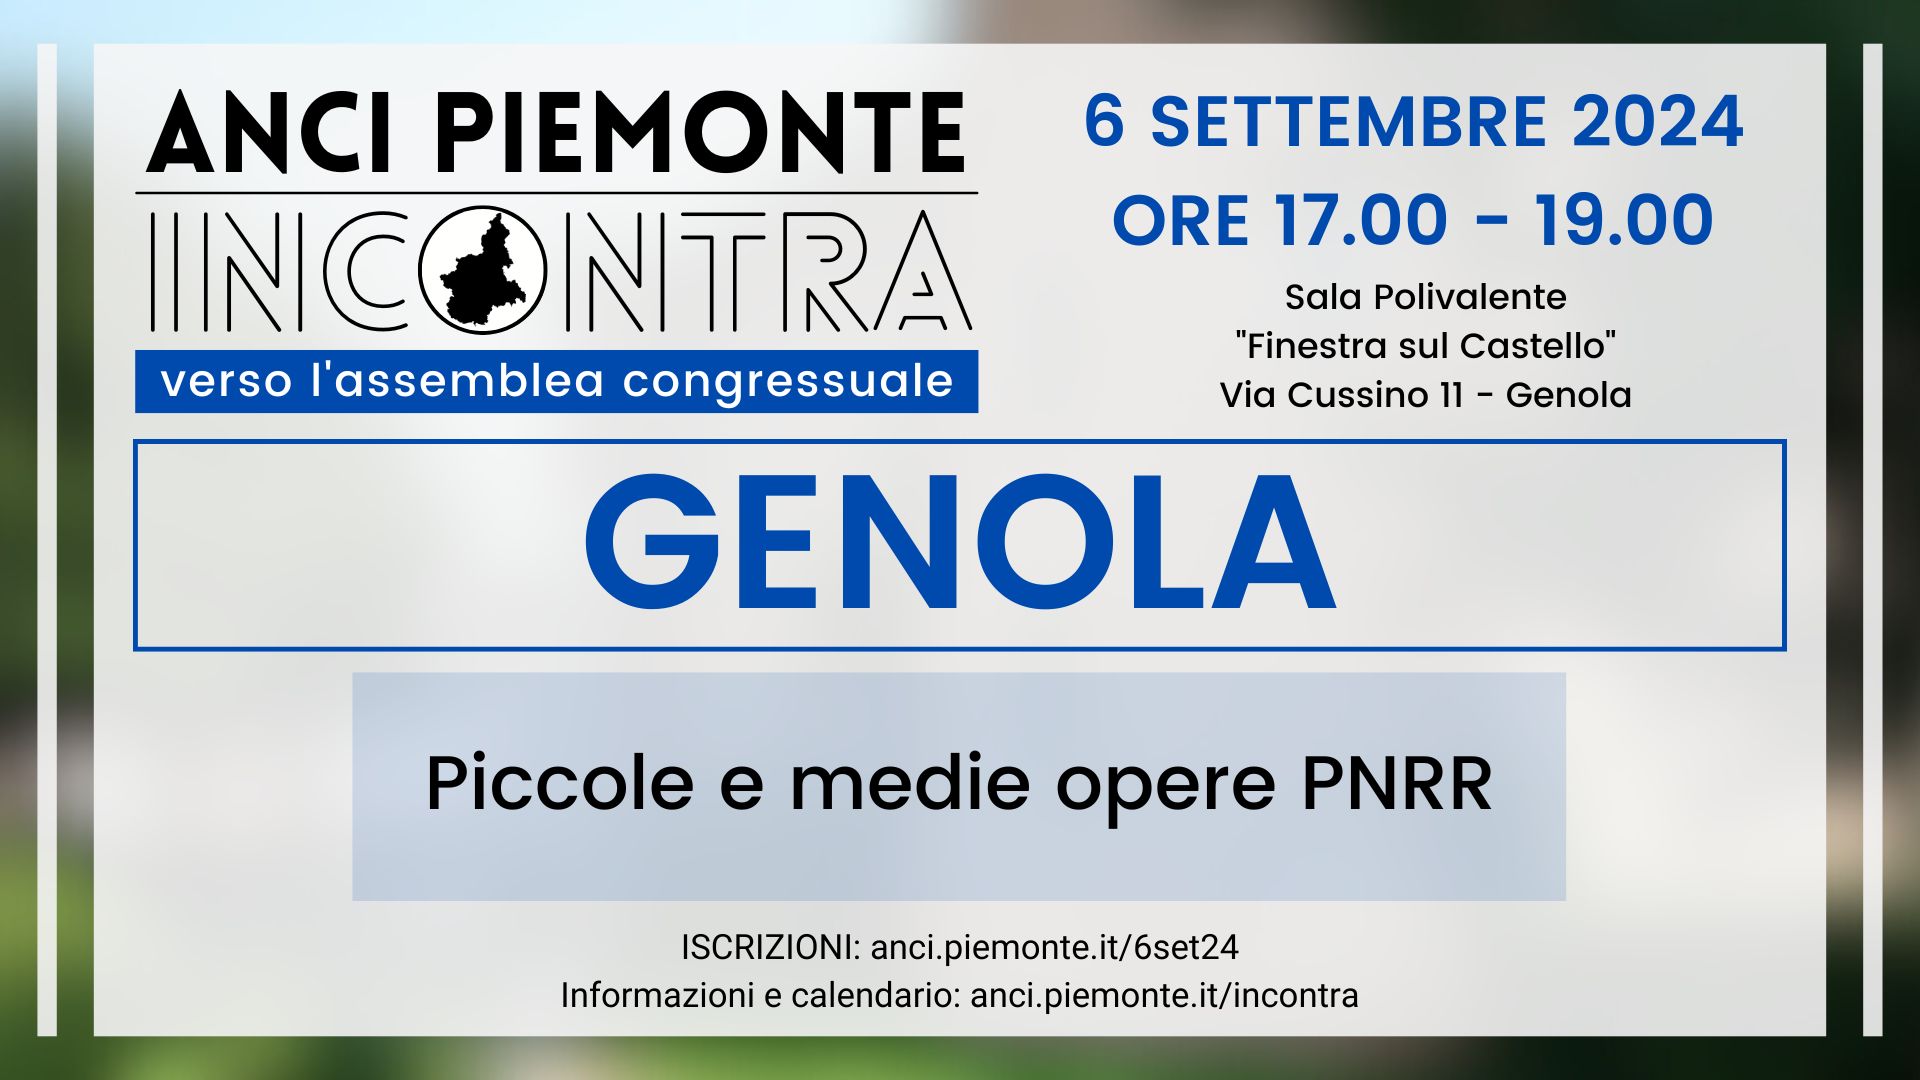 ANCI Piemonte Incontra - Genola - 6 settembre 2024